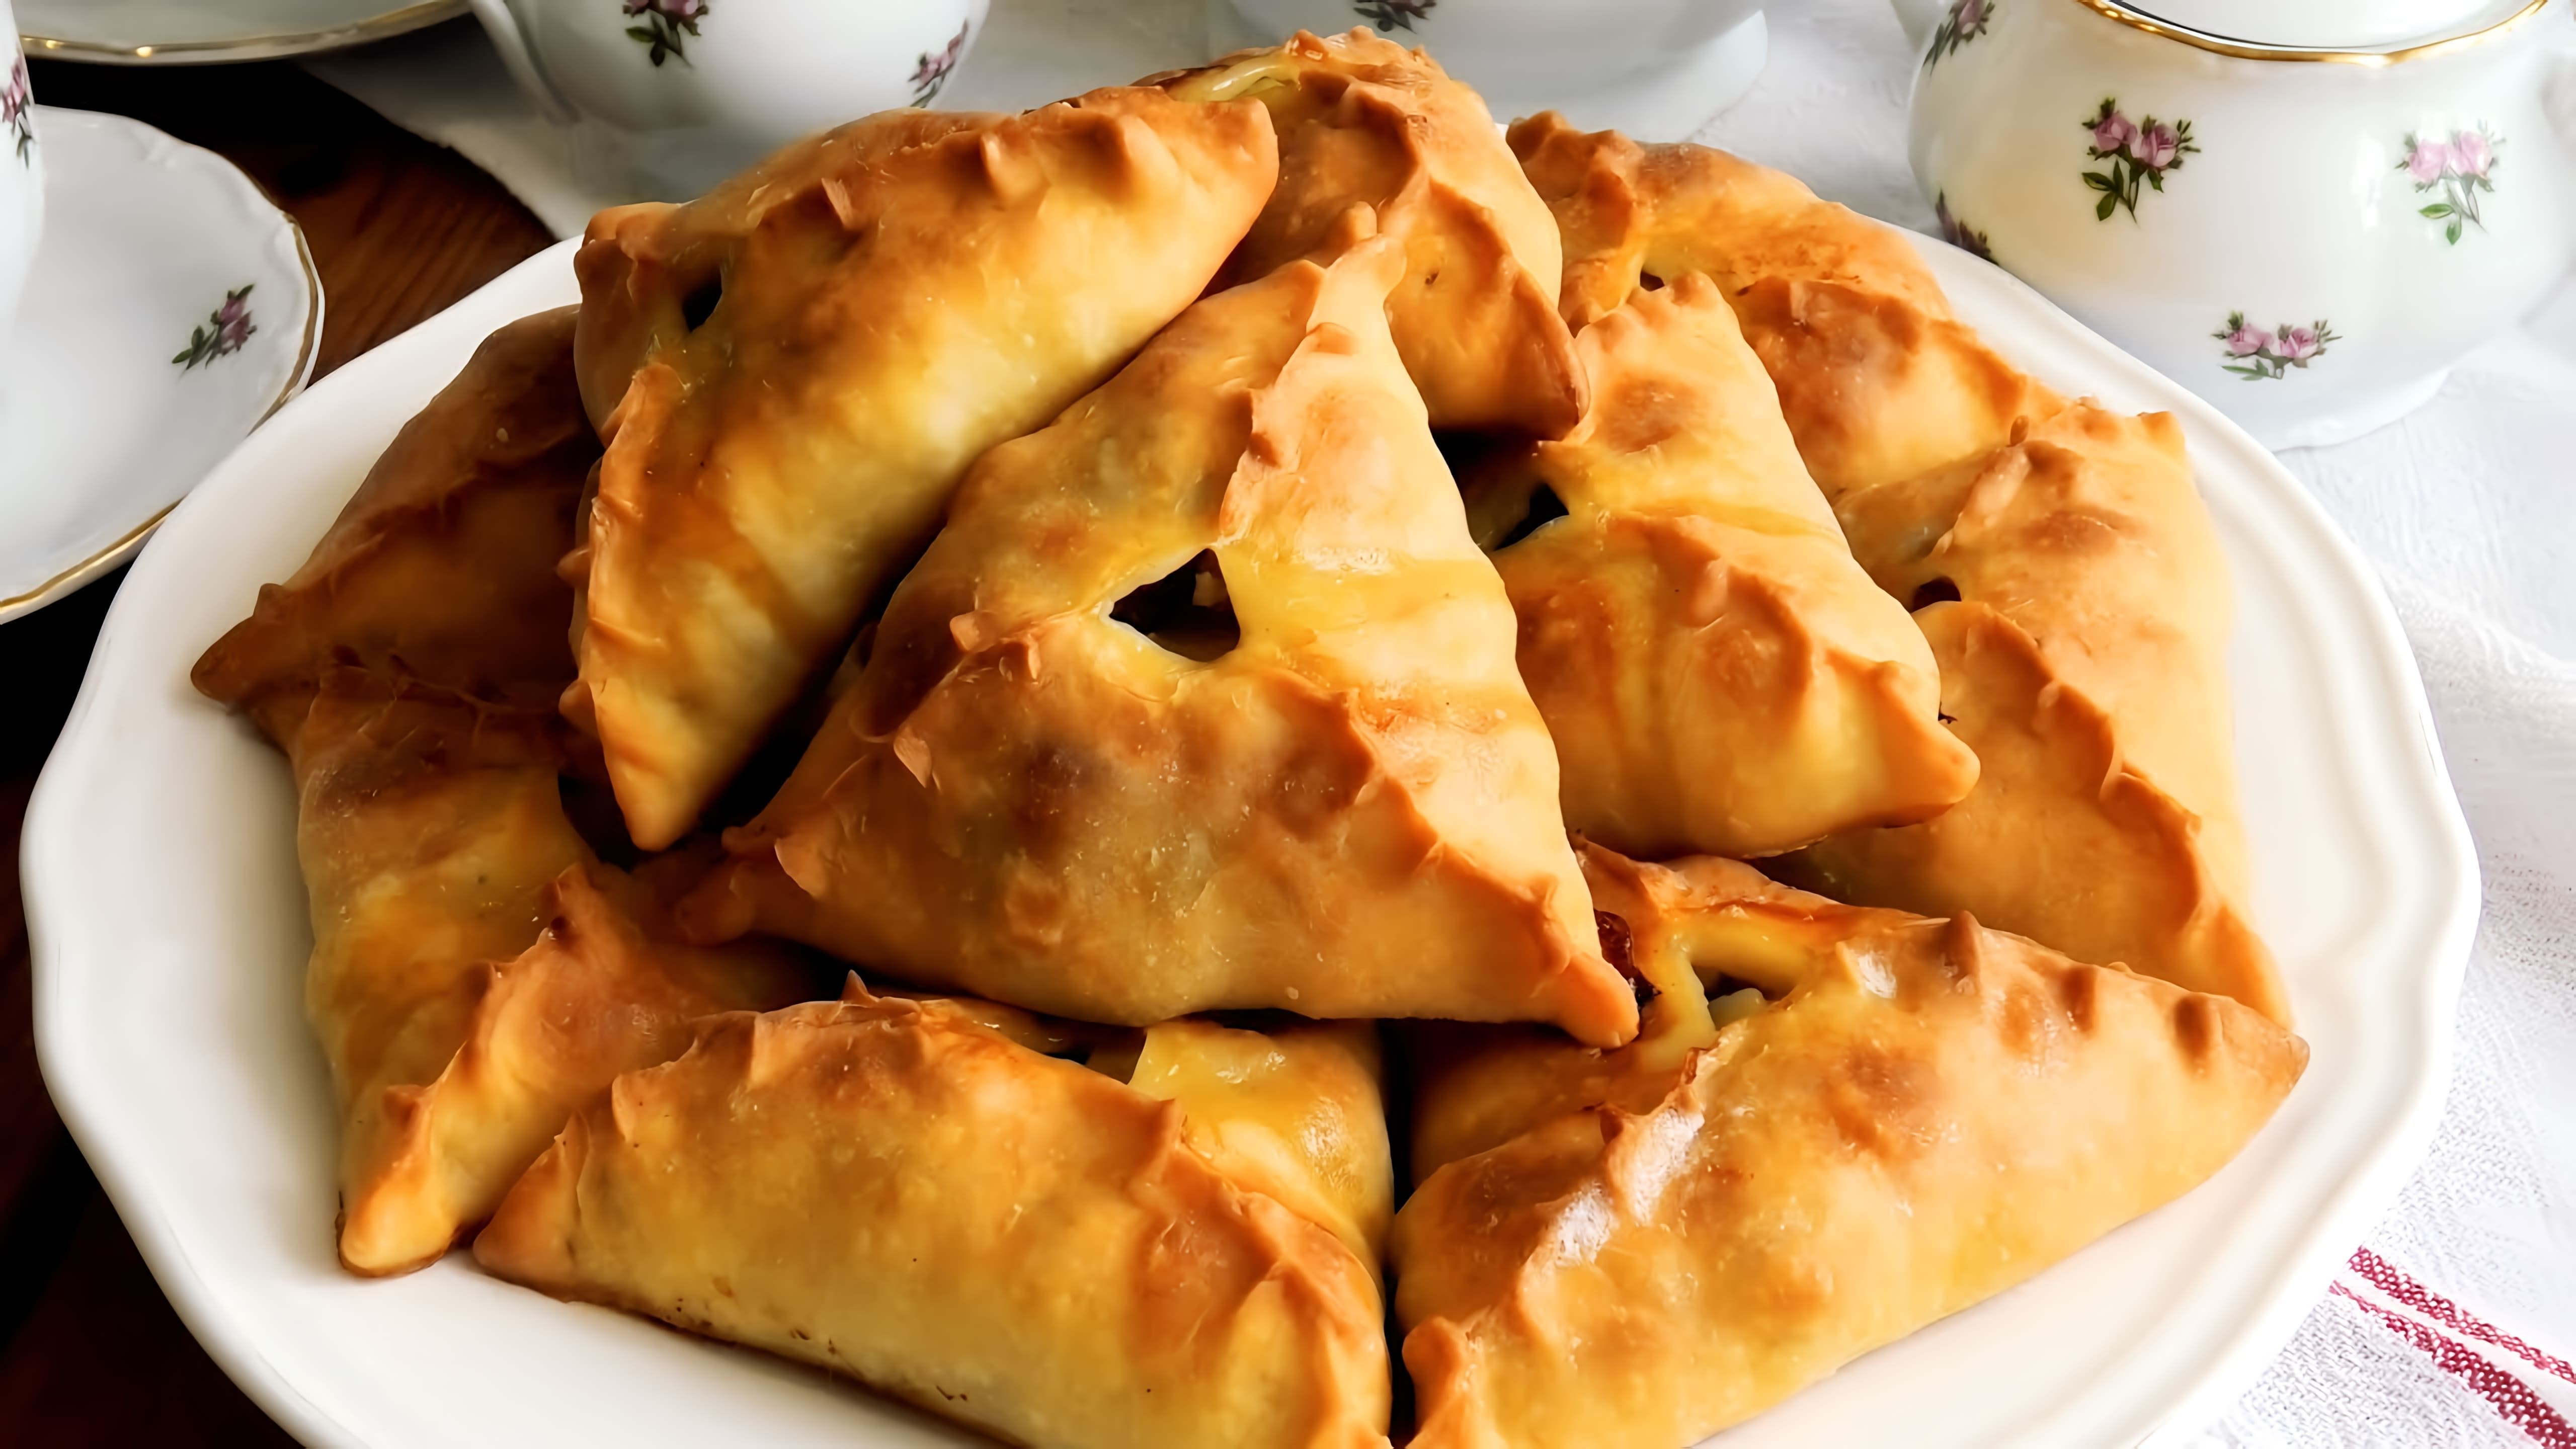 В этом видео демонстрируется процесс приготовления татарских эчпочмаков - треугольных пирожков с мясной начинкой и картофелем